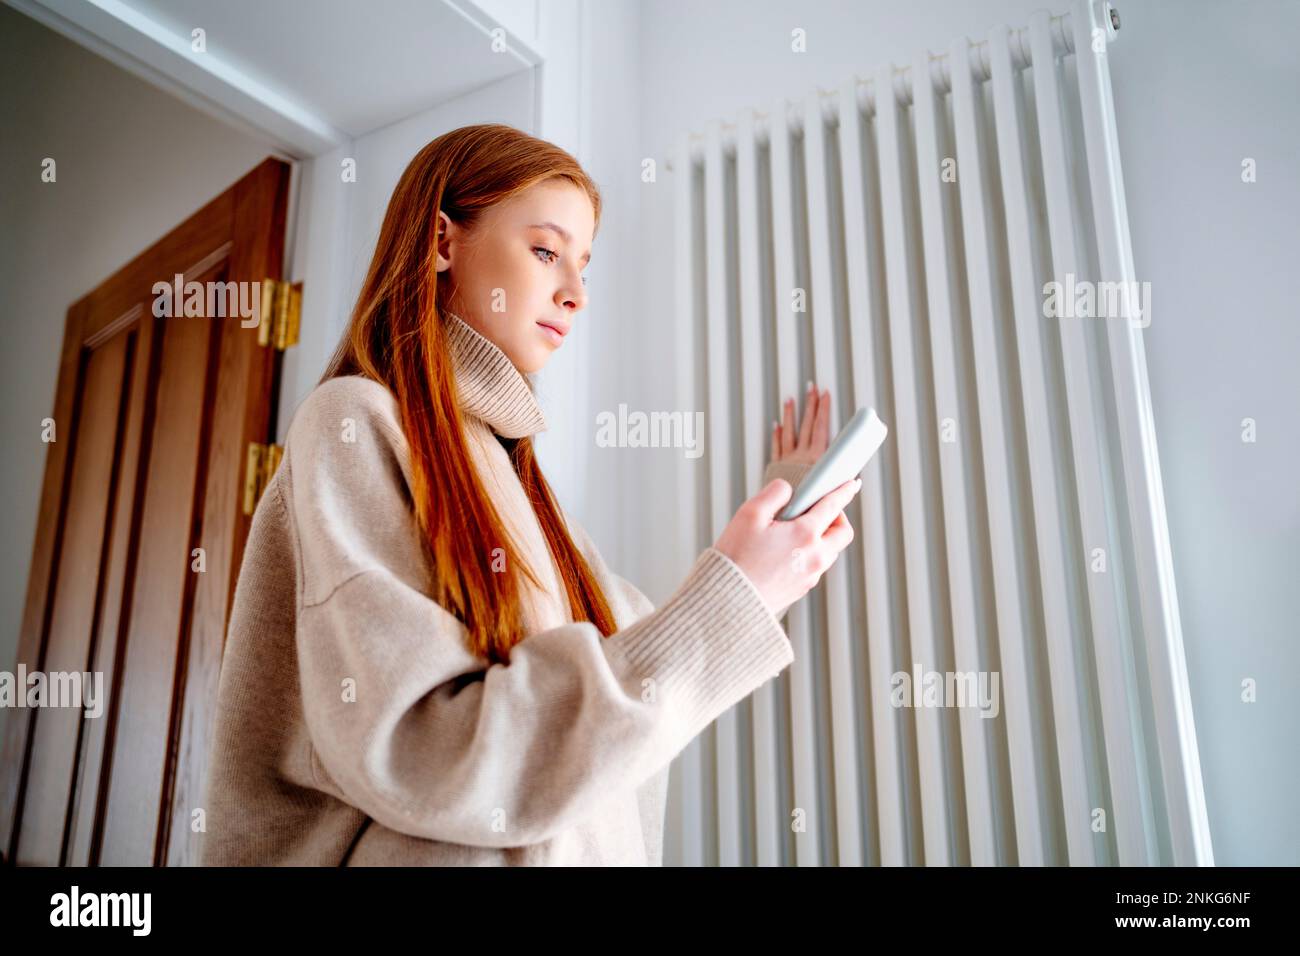 Ragazza adolescente che usa il telefono cellulare per controllare la temperatura del radiatore a casa Foto Stock